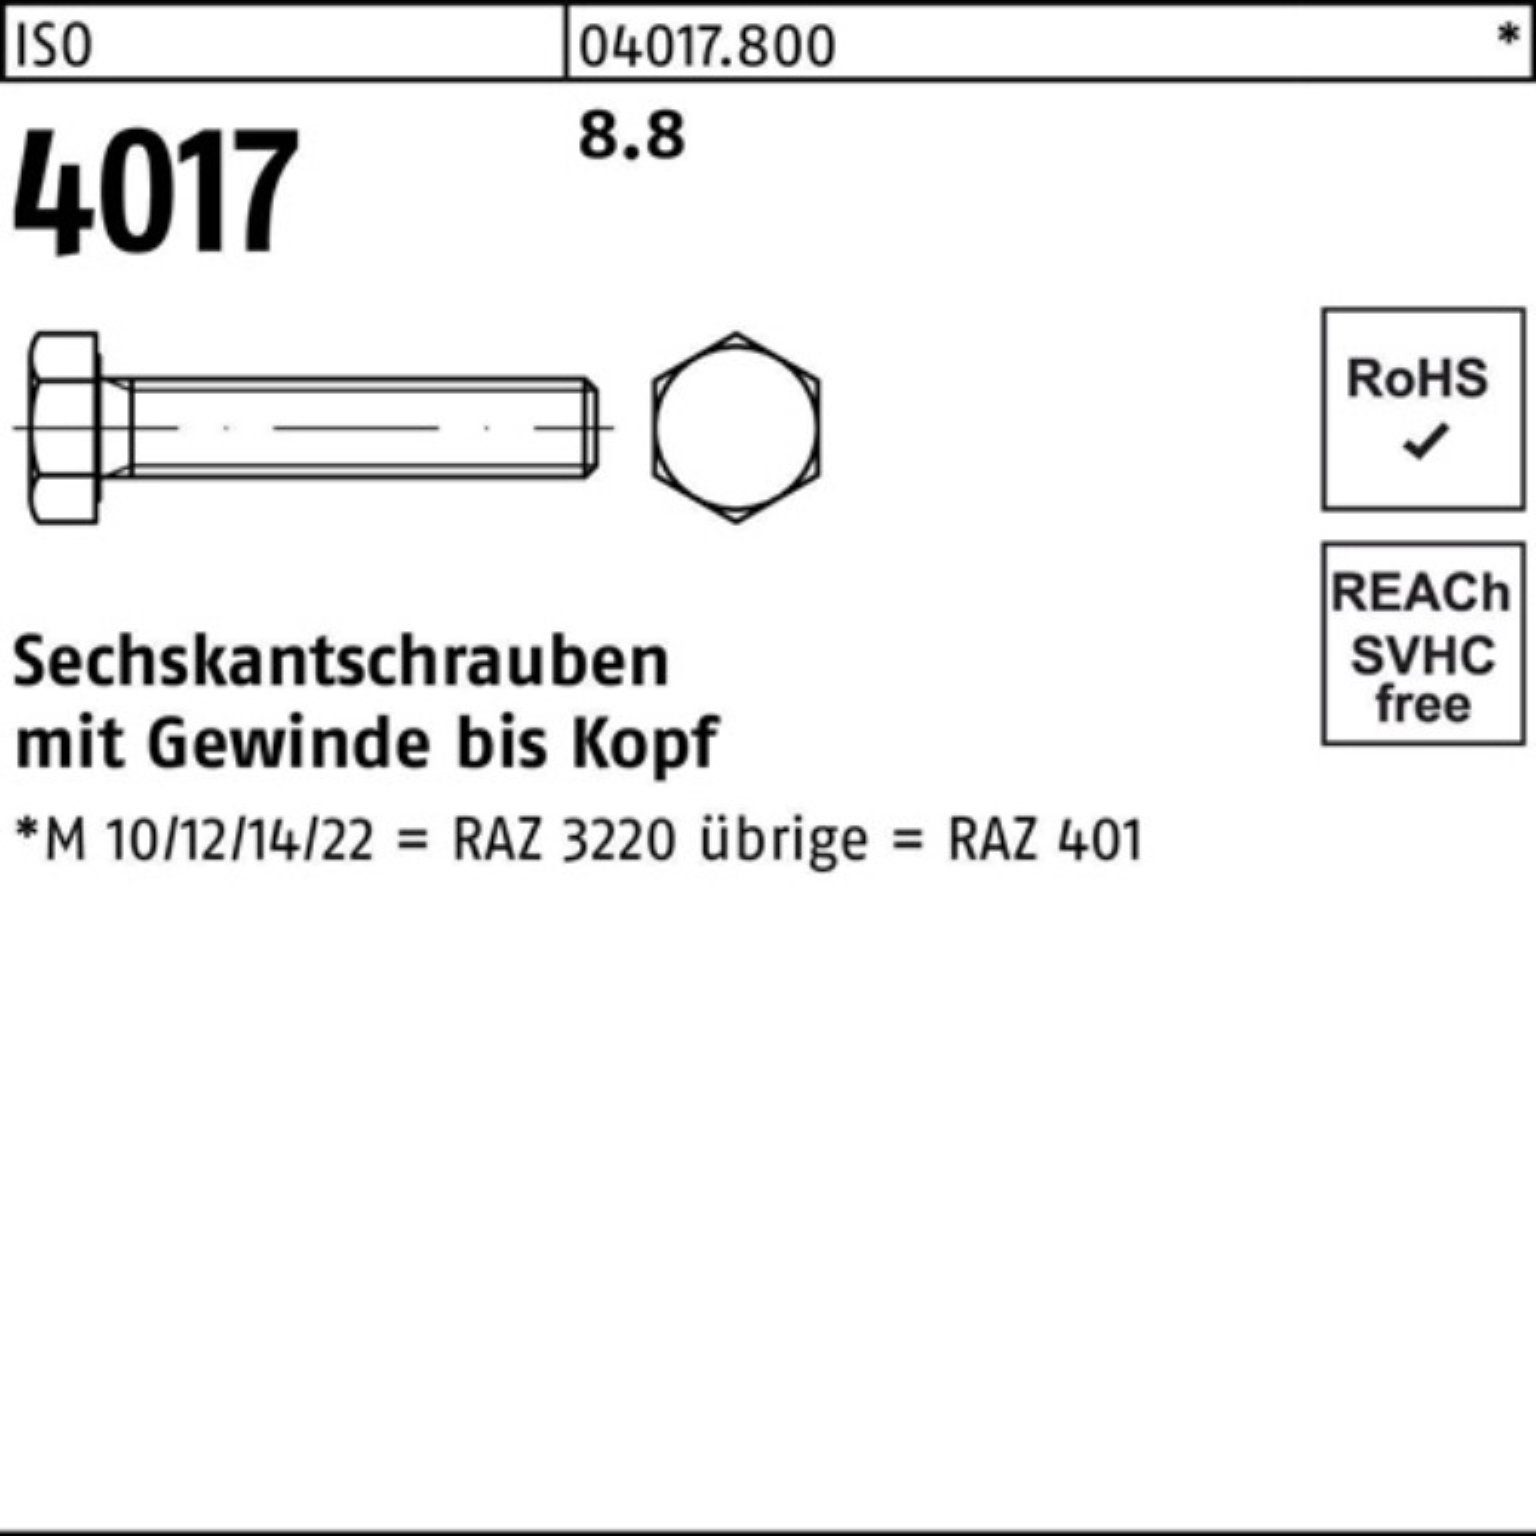 Sechskantschraube ISO 30 401 500 500er VG M4x ISO Stück 8.8 Pack Bufab Sechskantschraube 4017